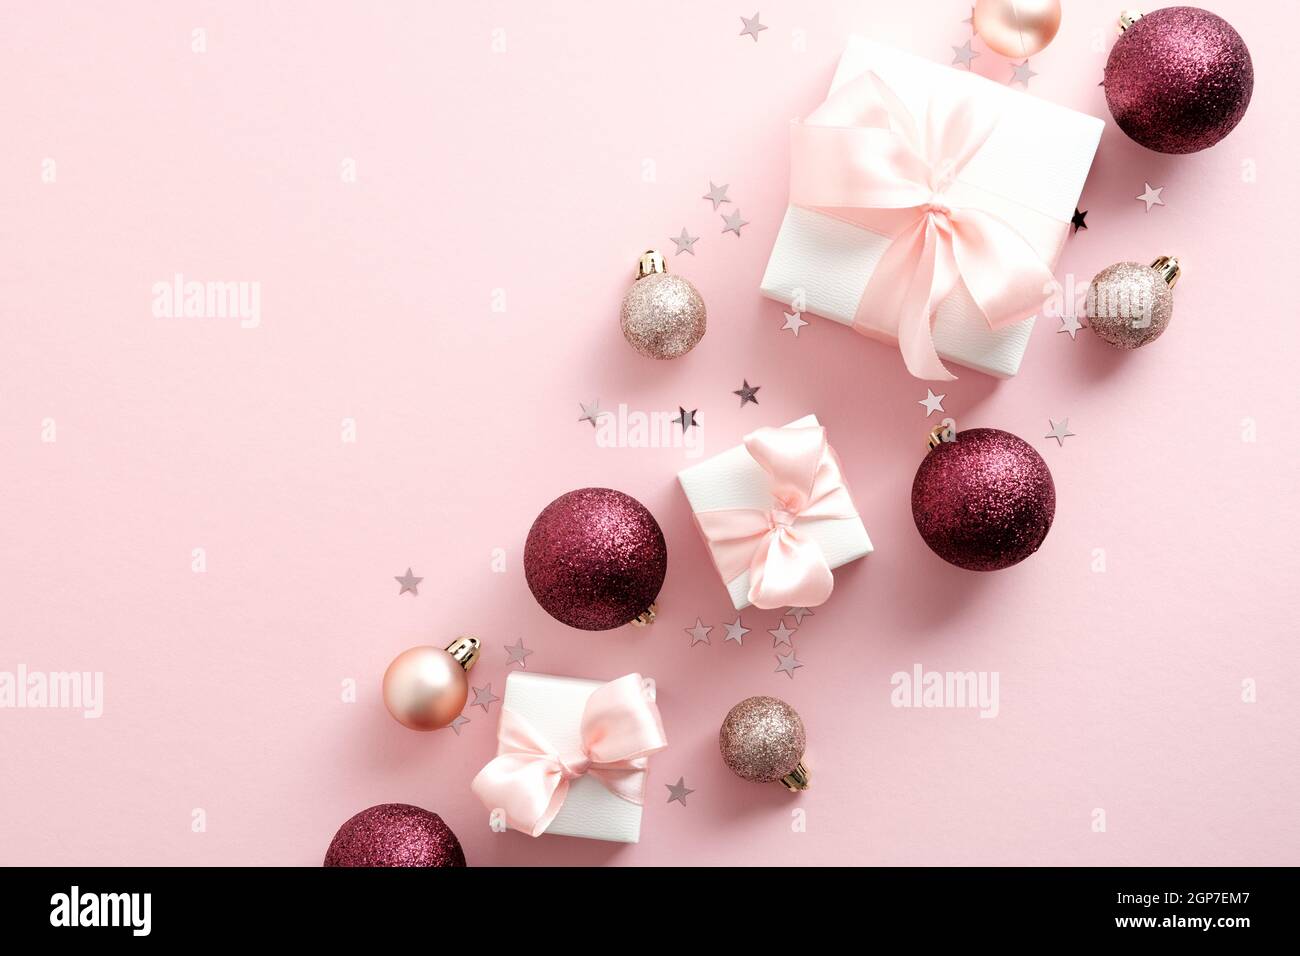 Với hình nền Giáng sinh màu hồng này, bạn sẽ được đắm mình trong không khí lễ hội cùng màu sắc ngọt ngào, tươi sáng và rực rỡ. Được thiết kế đầy tình yêu và sự chăm sóc, đây chắc chắn là một lựa chọn hoàn hảo cho bất kỳ ai đang tìm kiếm một món quà Giáng sinh đầy ý nghĩa.